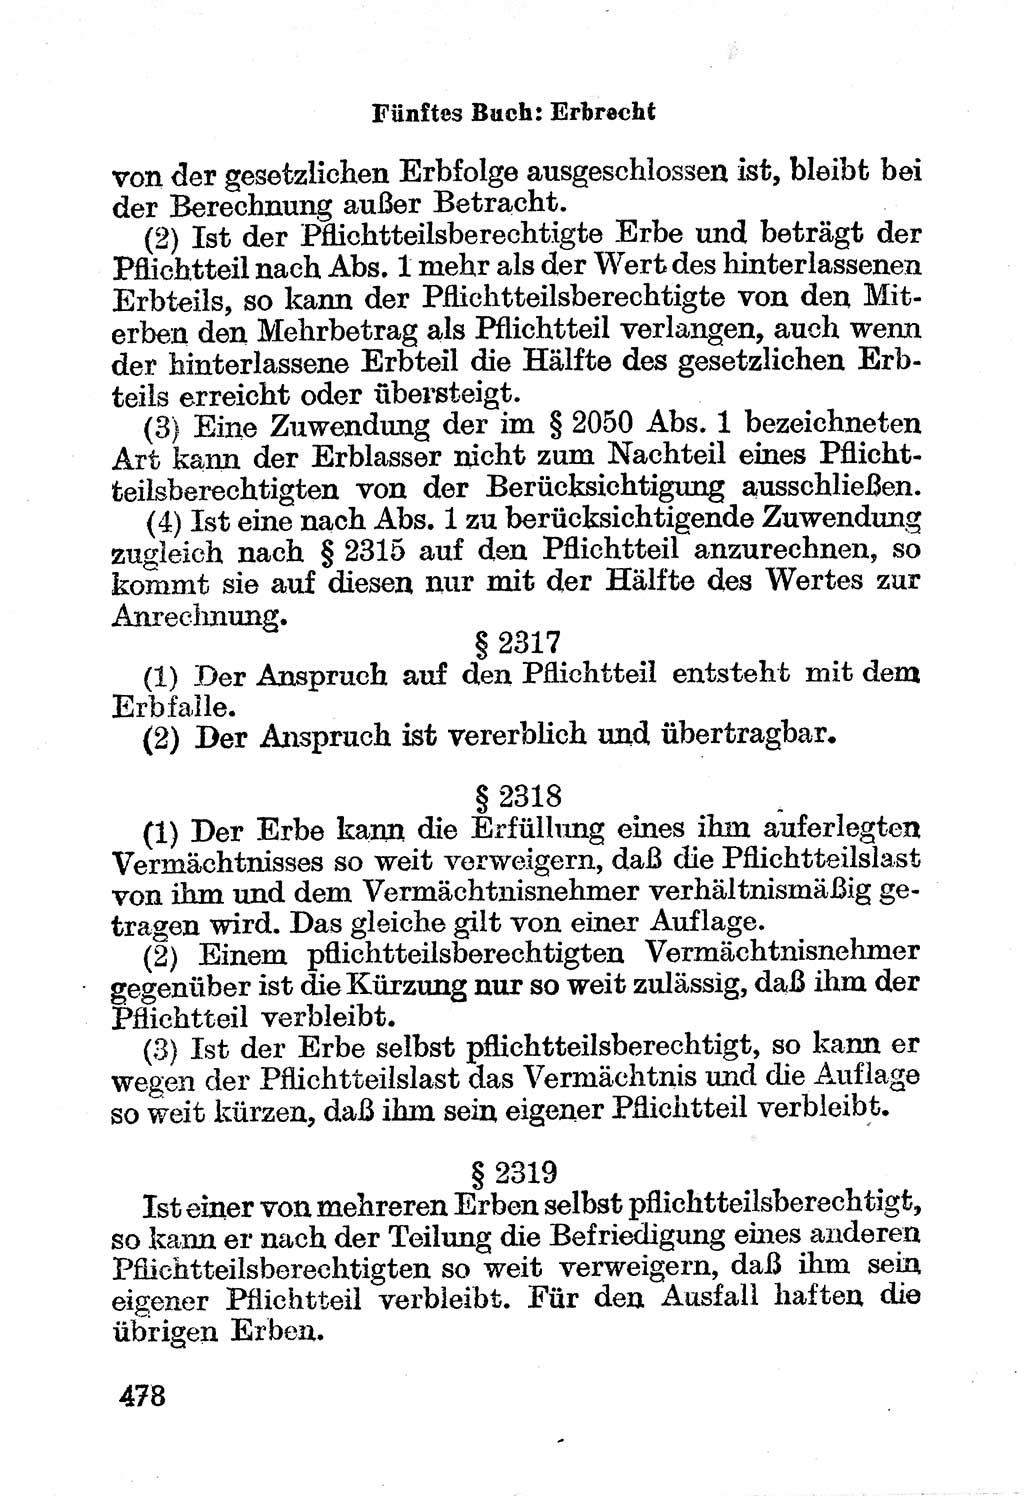 Bürgerliches Gesetzbuch (BGB) nebst wichtigen Nebengesetzen [Deutsche Demokratische Republik (DDR)] 1956, Seite 478 (BGB Nebenges. DDR 1956, S. 478)